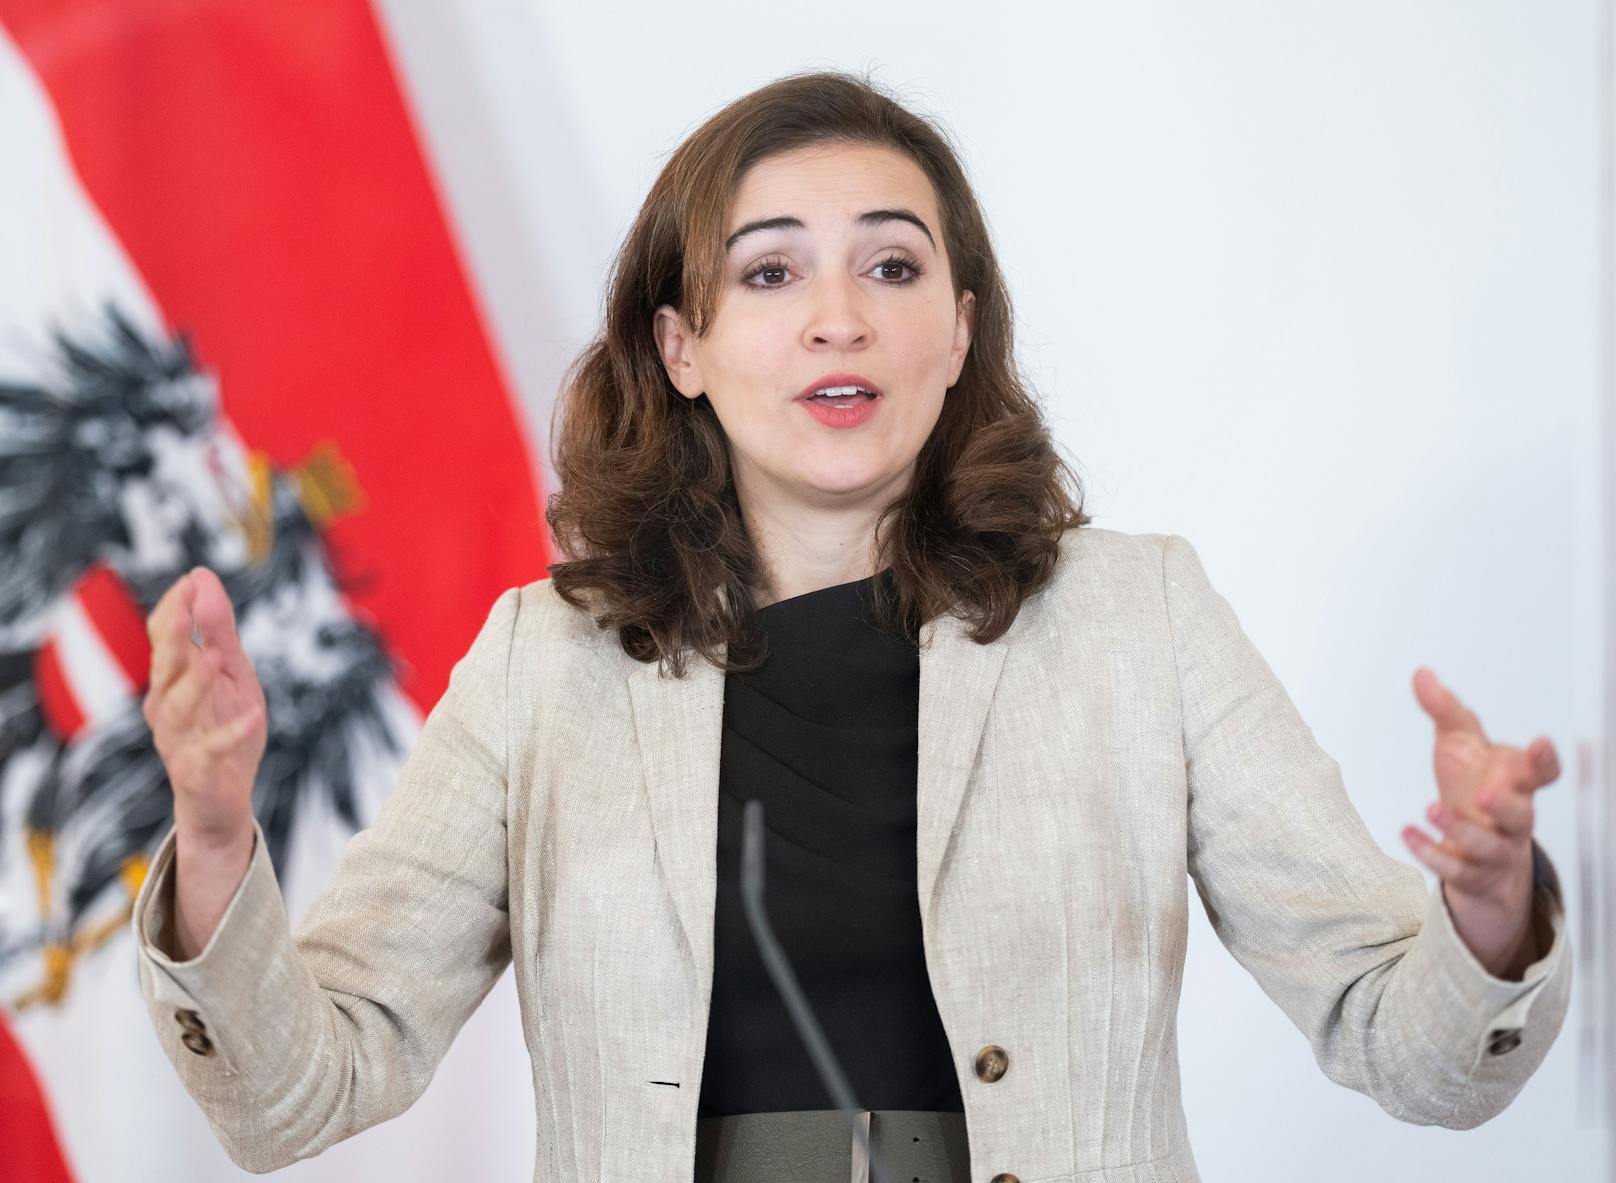 Justizministerin Alma Zadic (Grüne) am 25. Mai 2021 im Rahmen der Pressekonferenz "Reform des Maßnahmenvollzugs" im Bundeskanzleramt in Wien.